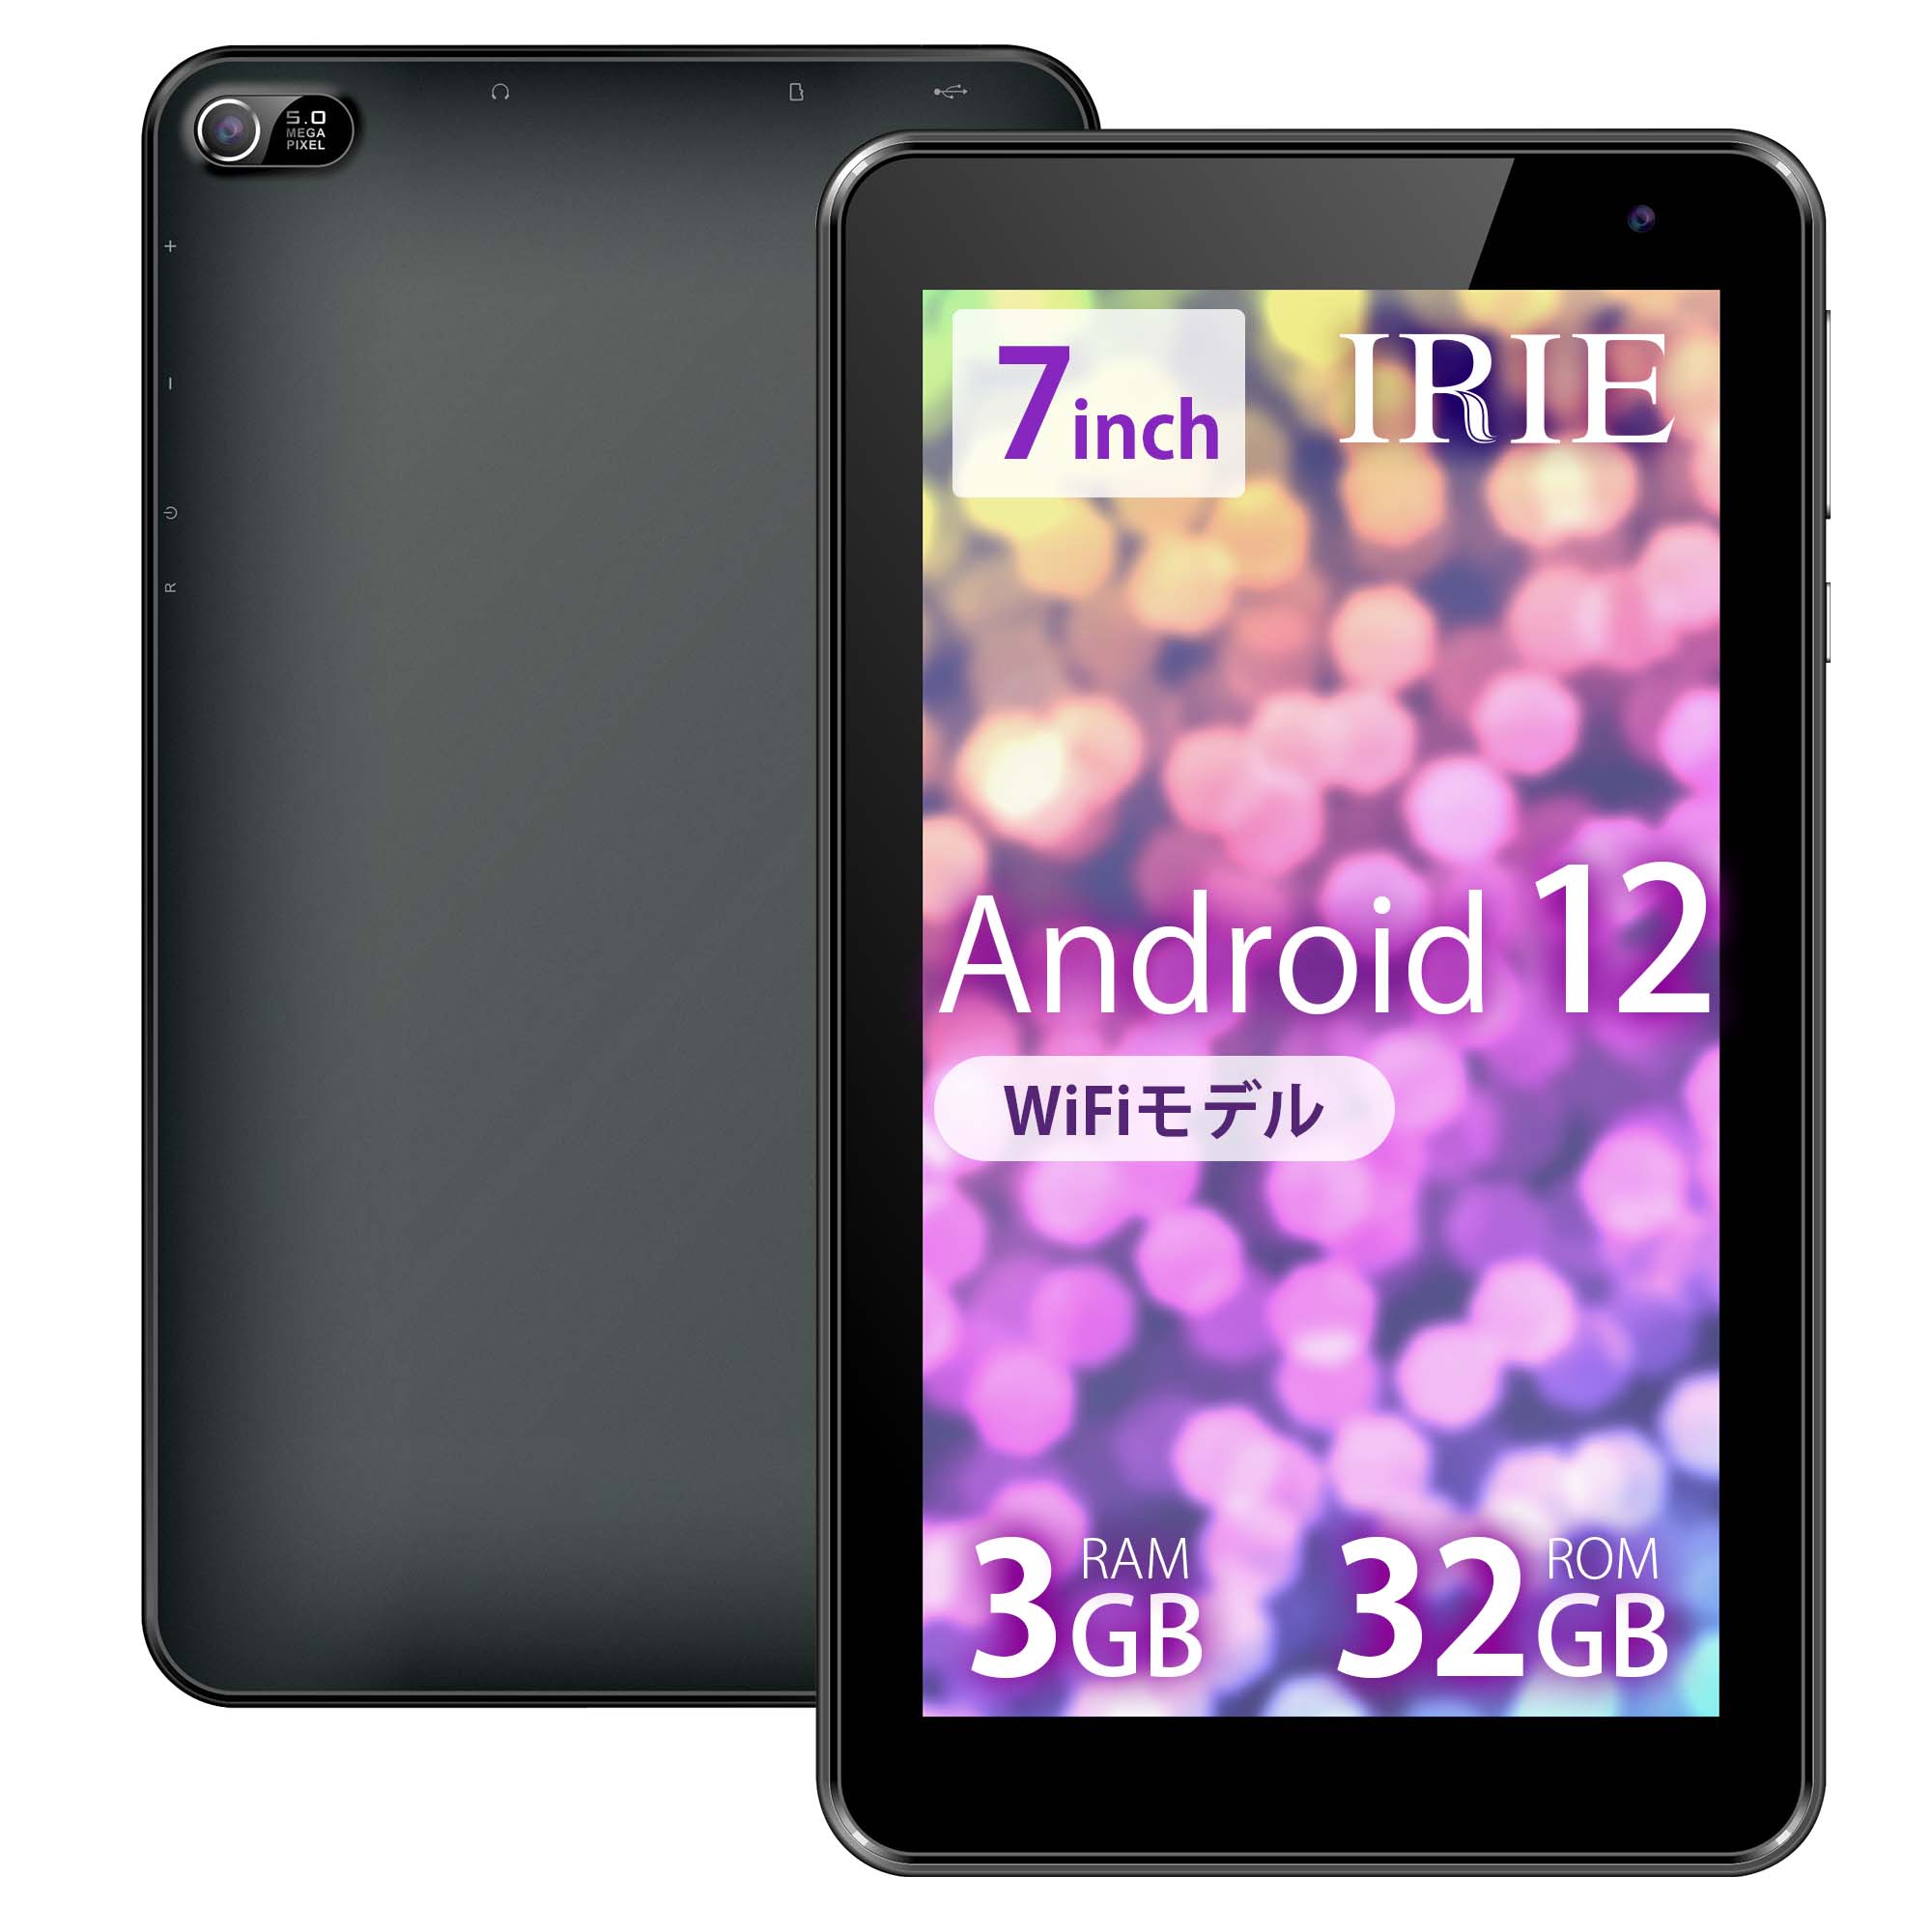 タブレットPC 本体 7インチ wi-fiモデル Android12 新品 32GB 3GB RAM CPU 4コア IPS WSVGA 7型  タブレットPC wifi F3T7-B1 送料無料 1年保証